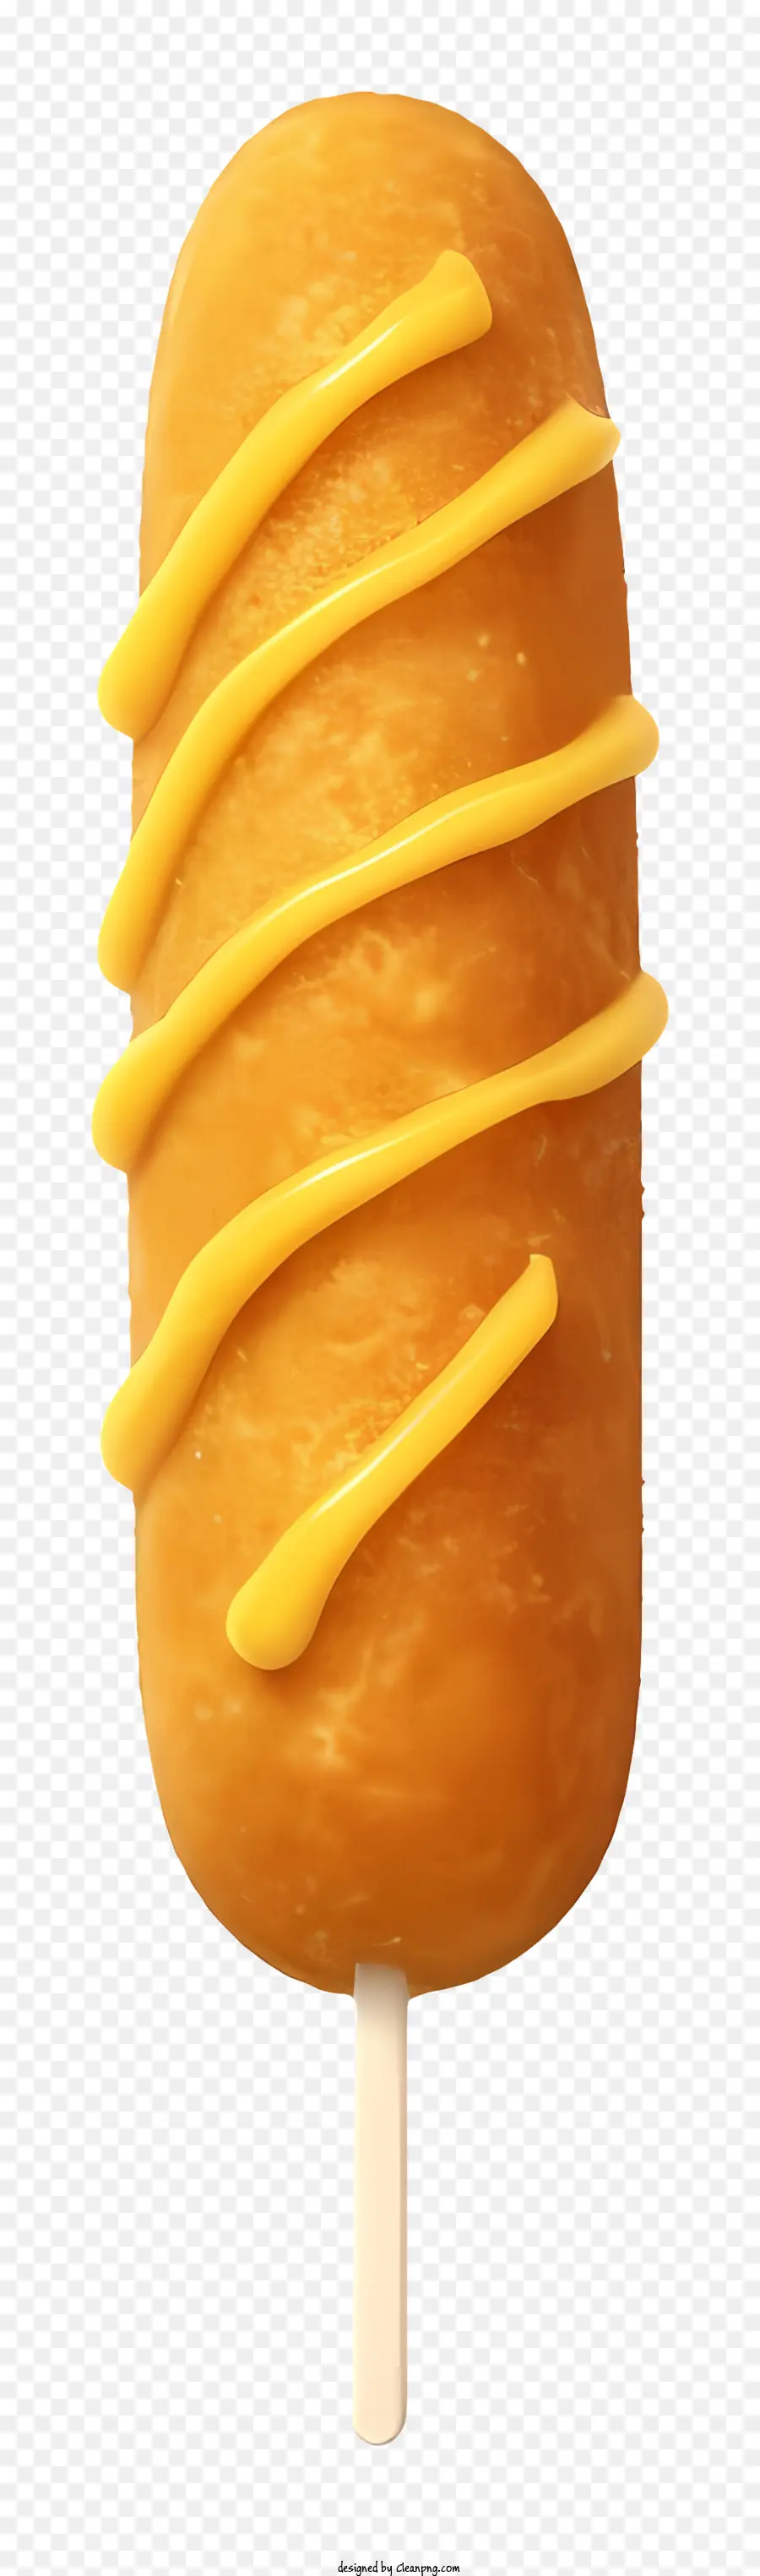 Dessert auf einem Stab gelb vereisen teigige Gebäckkuchen-ähnliches Erscheinungsbild gelbe viskose Substanz - Dessert am Stab mit gelbem Zuckerguss